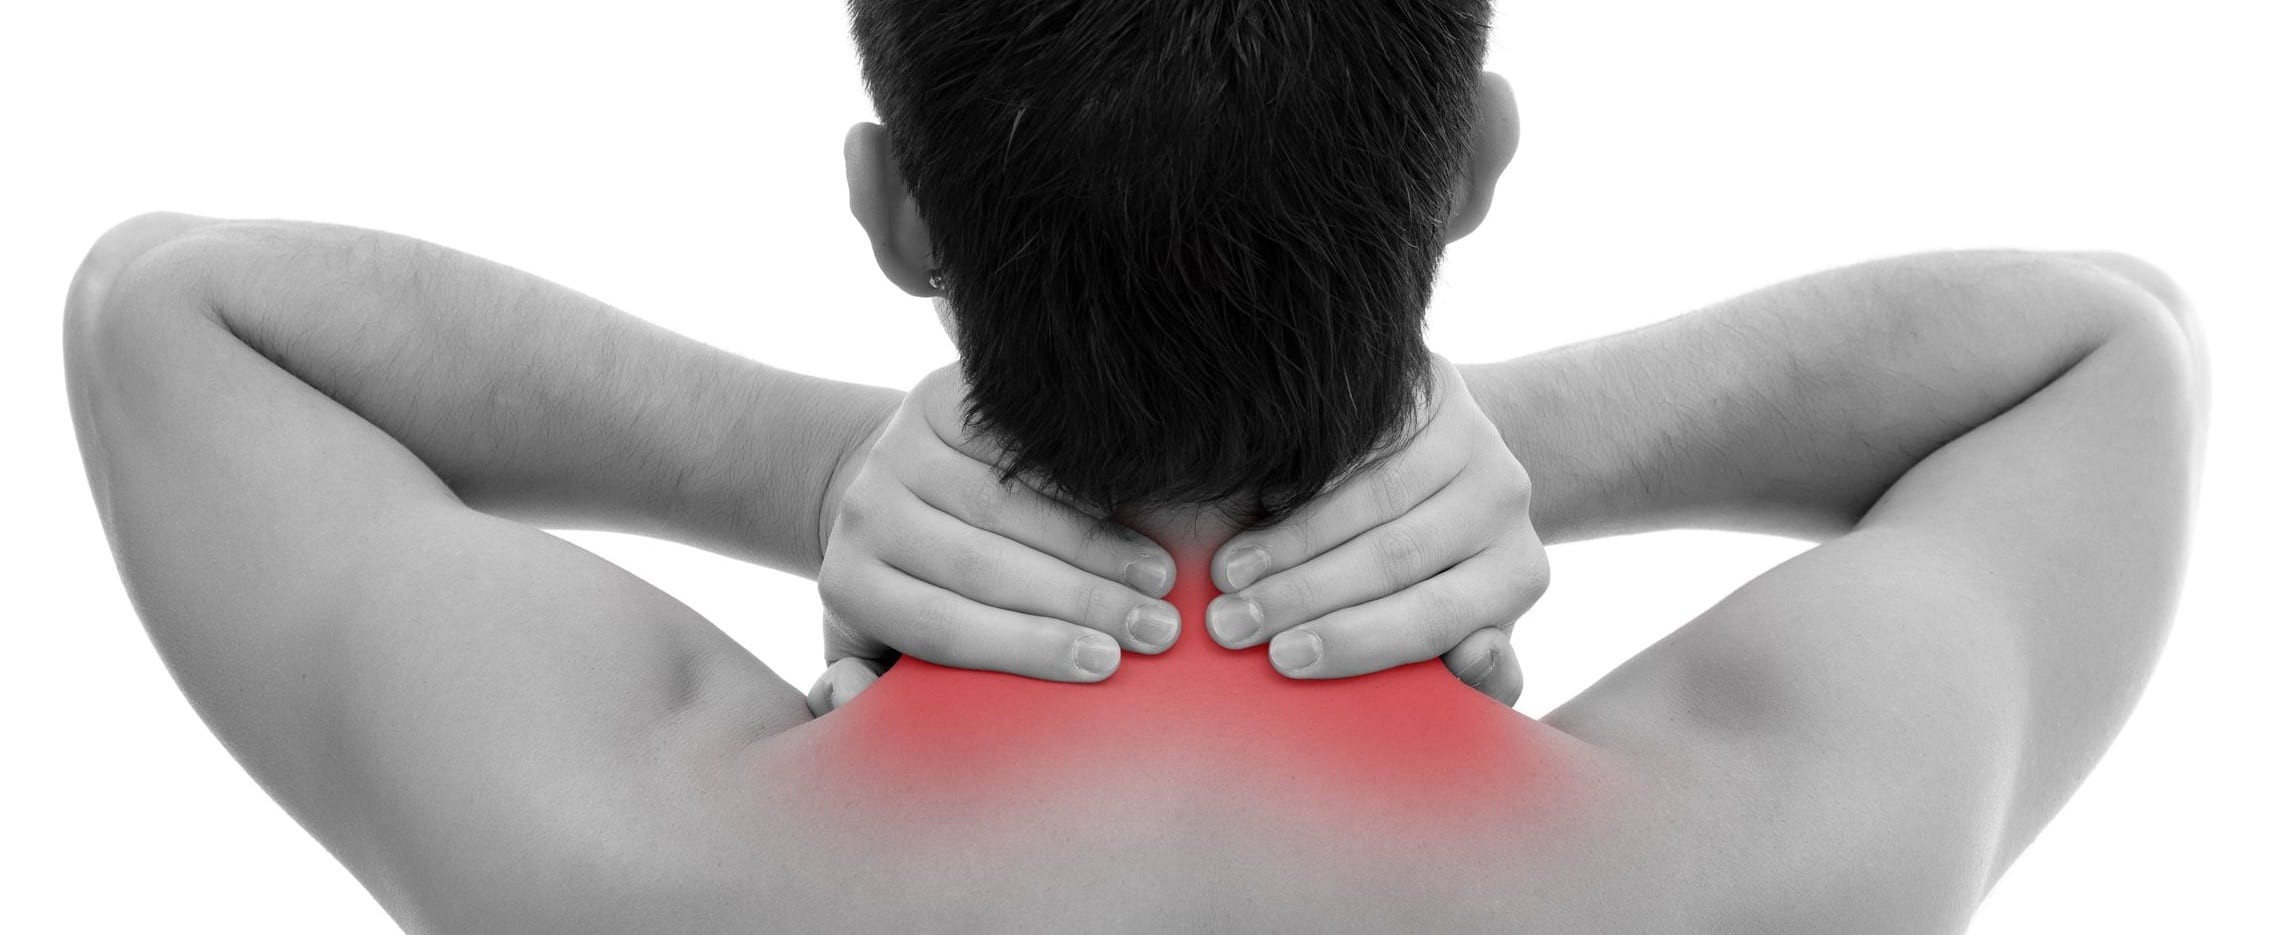 Fort Lauderdale Neck Pain Treatment | Neck Pain Relief ...